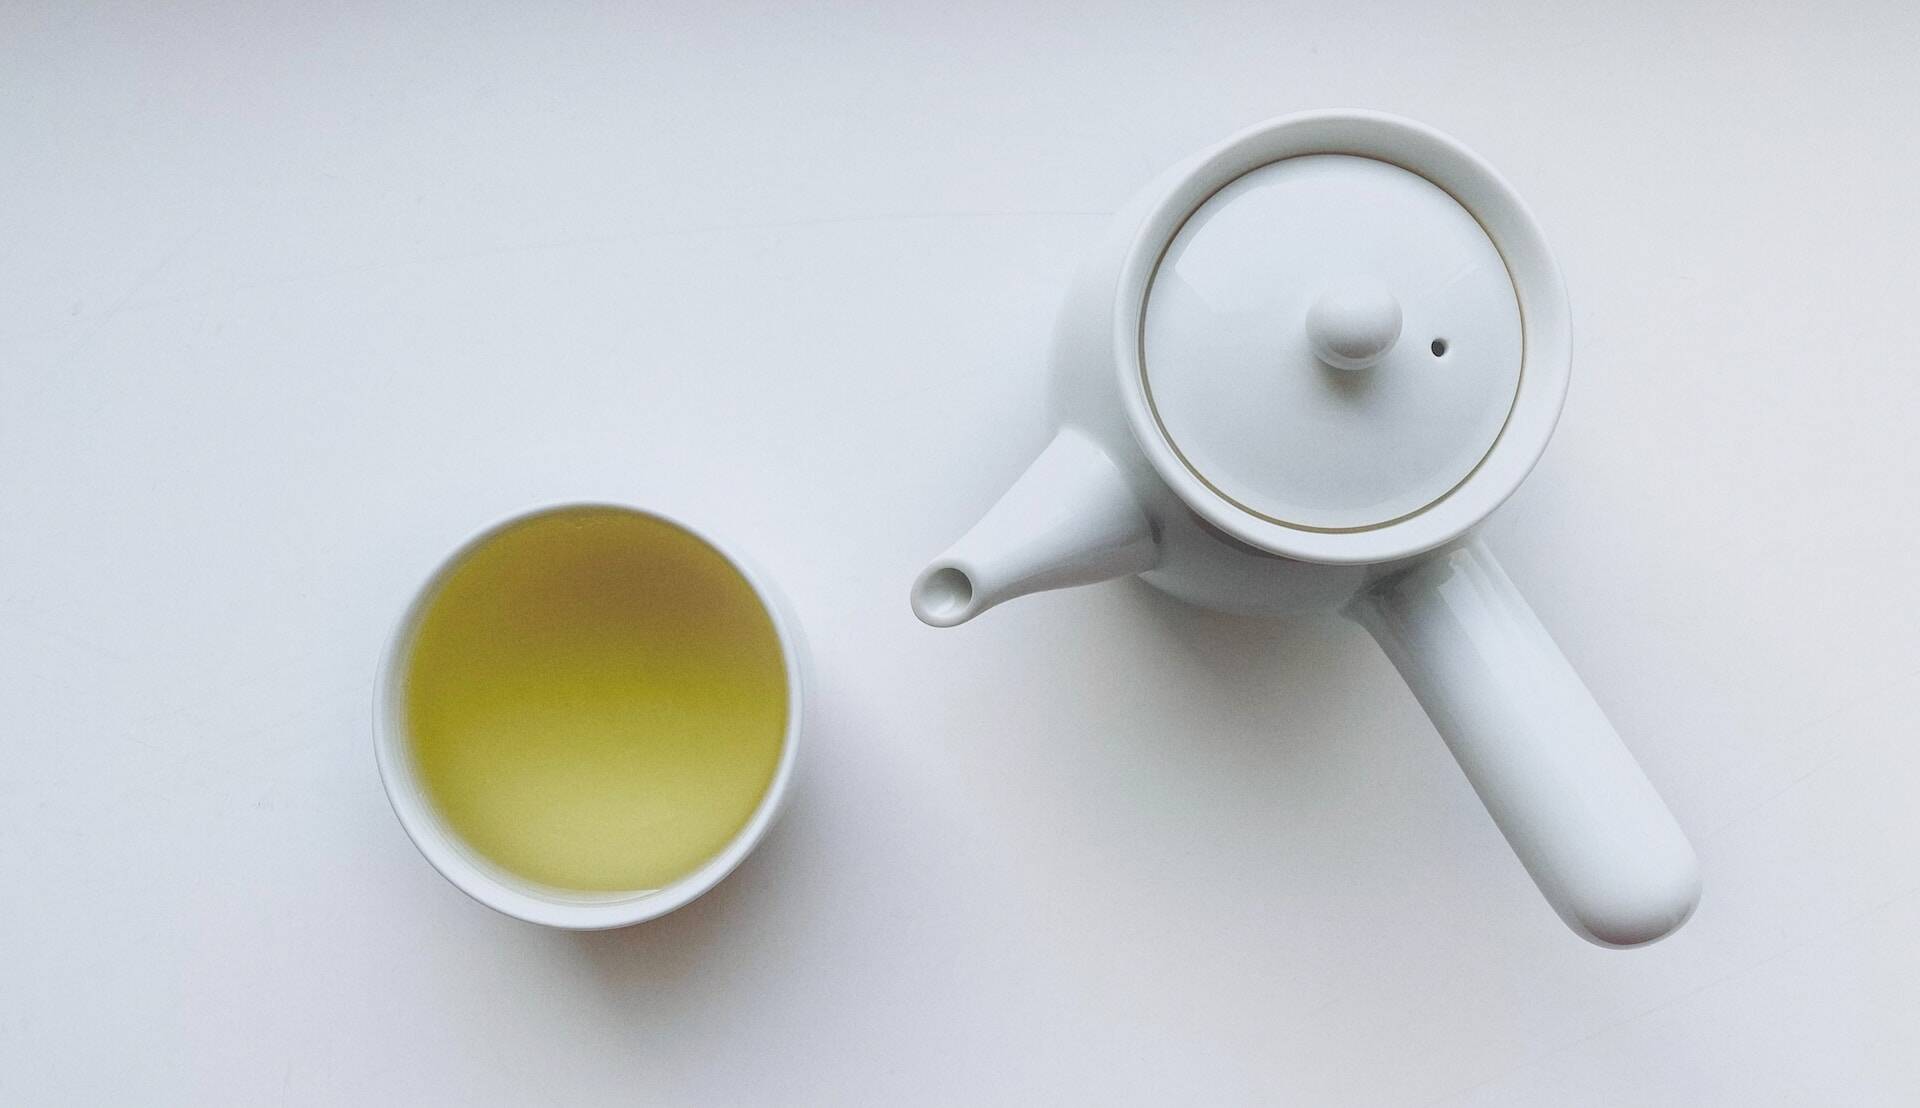 NCBI: Ученые нашли чай, который дает максимальную защиту от рака